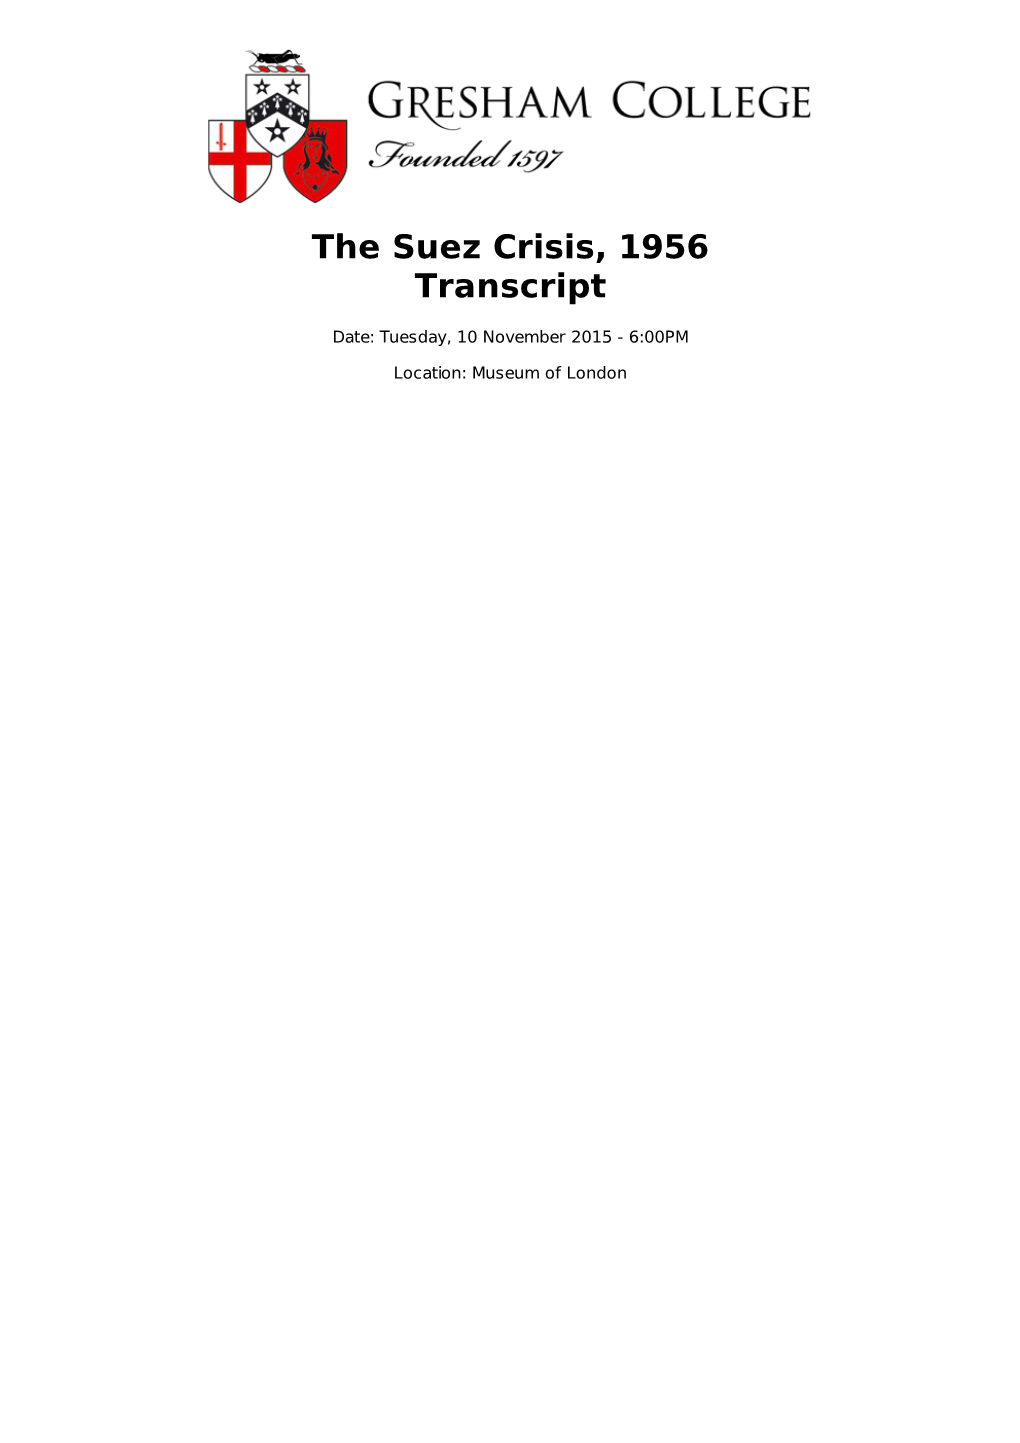 The Suez Crisis, 1956 Transcript